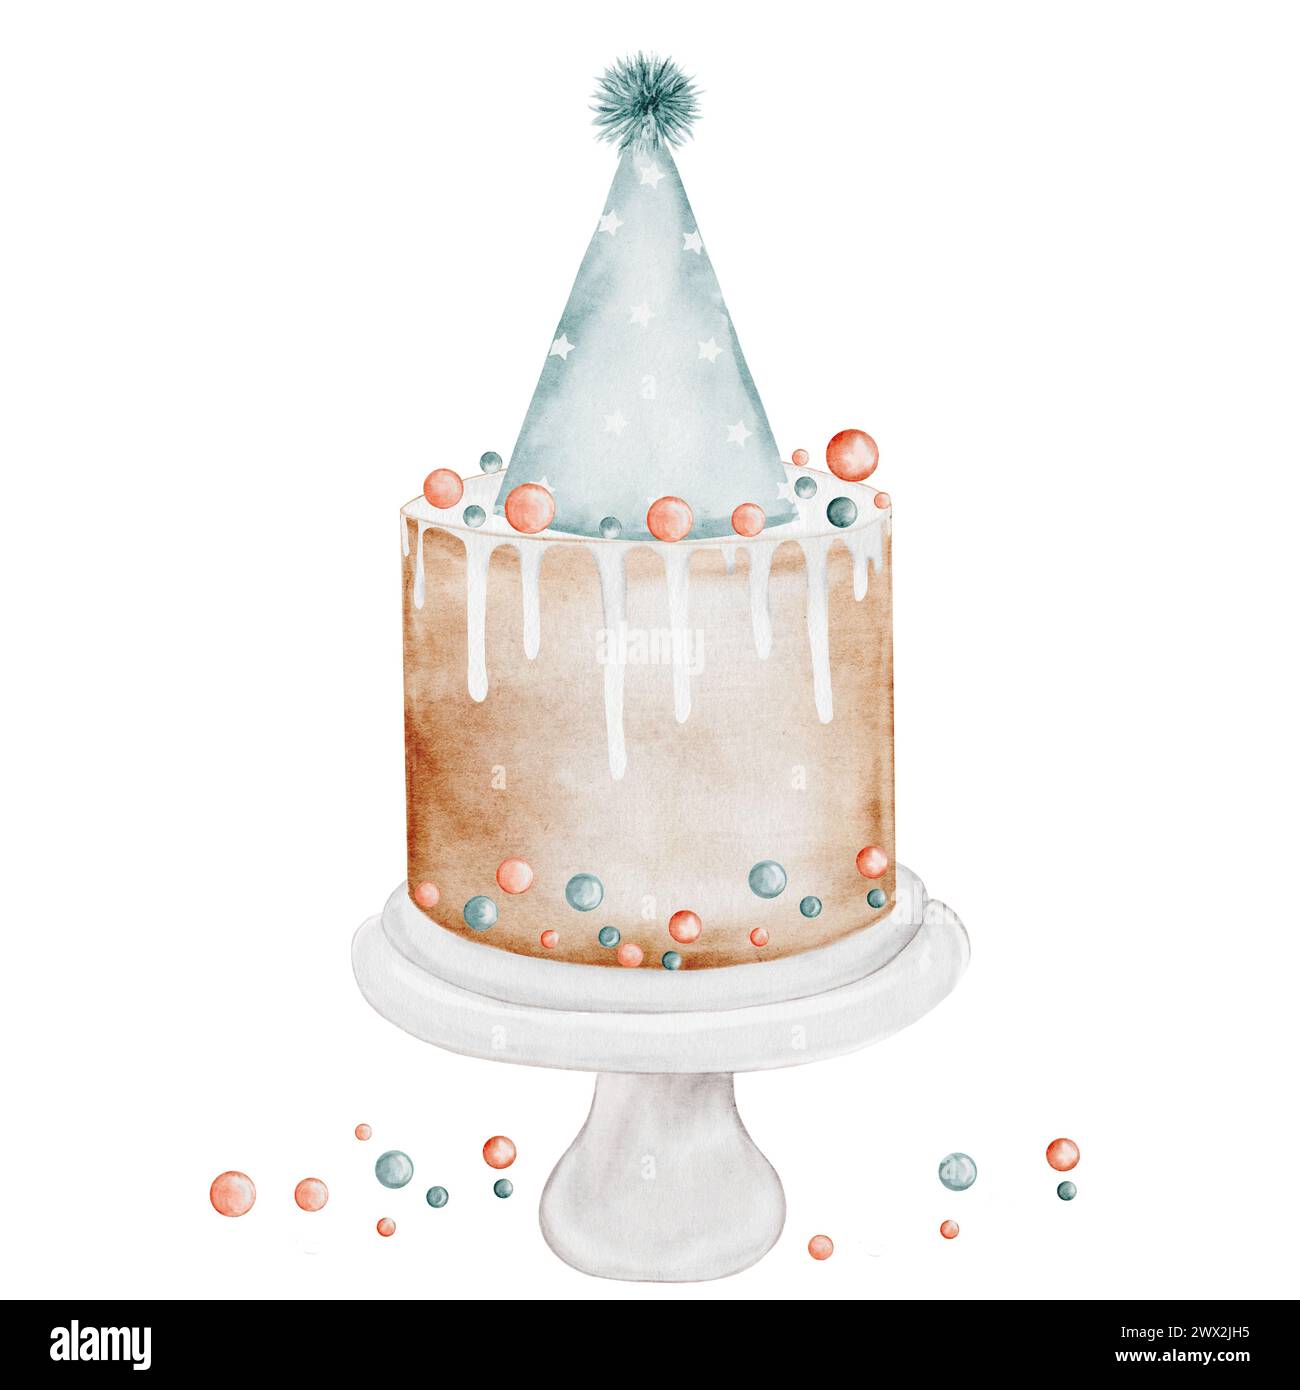 Torta di compleanno acquerello. Illustrazione vintage acquerello di una torta natalizia. Clip art isolata su fondo bianco dolci. Ideale per la progettazione Foto Stock